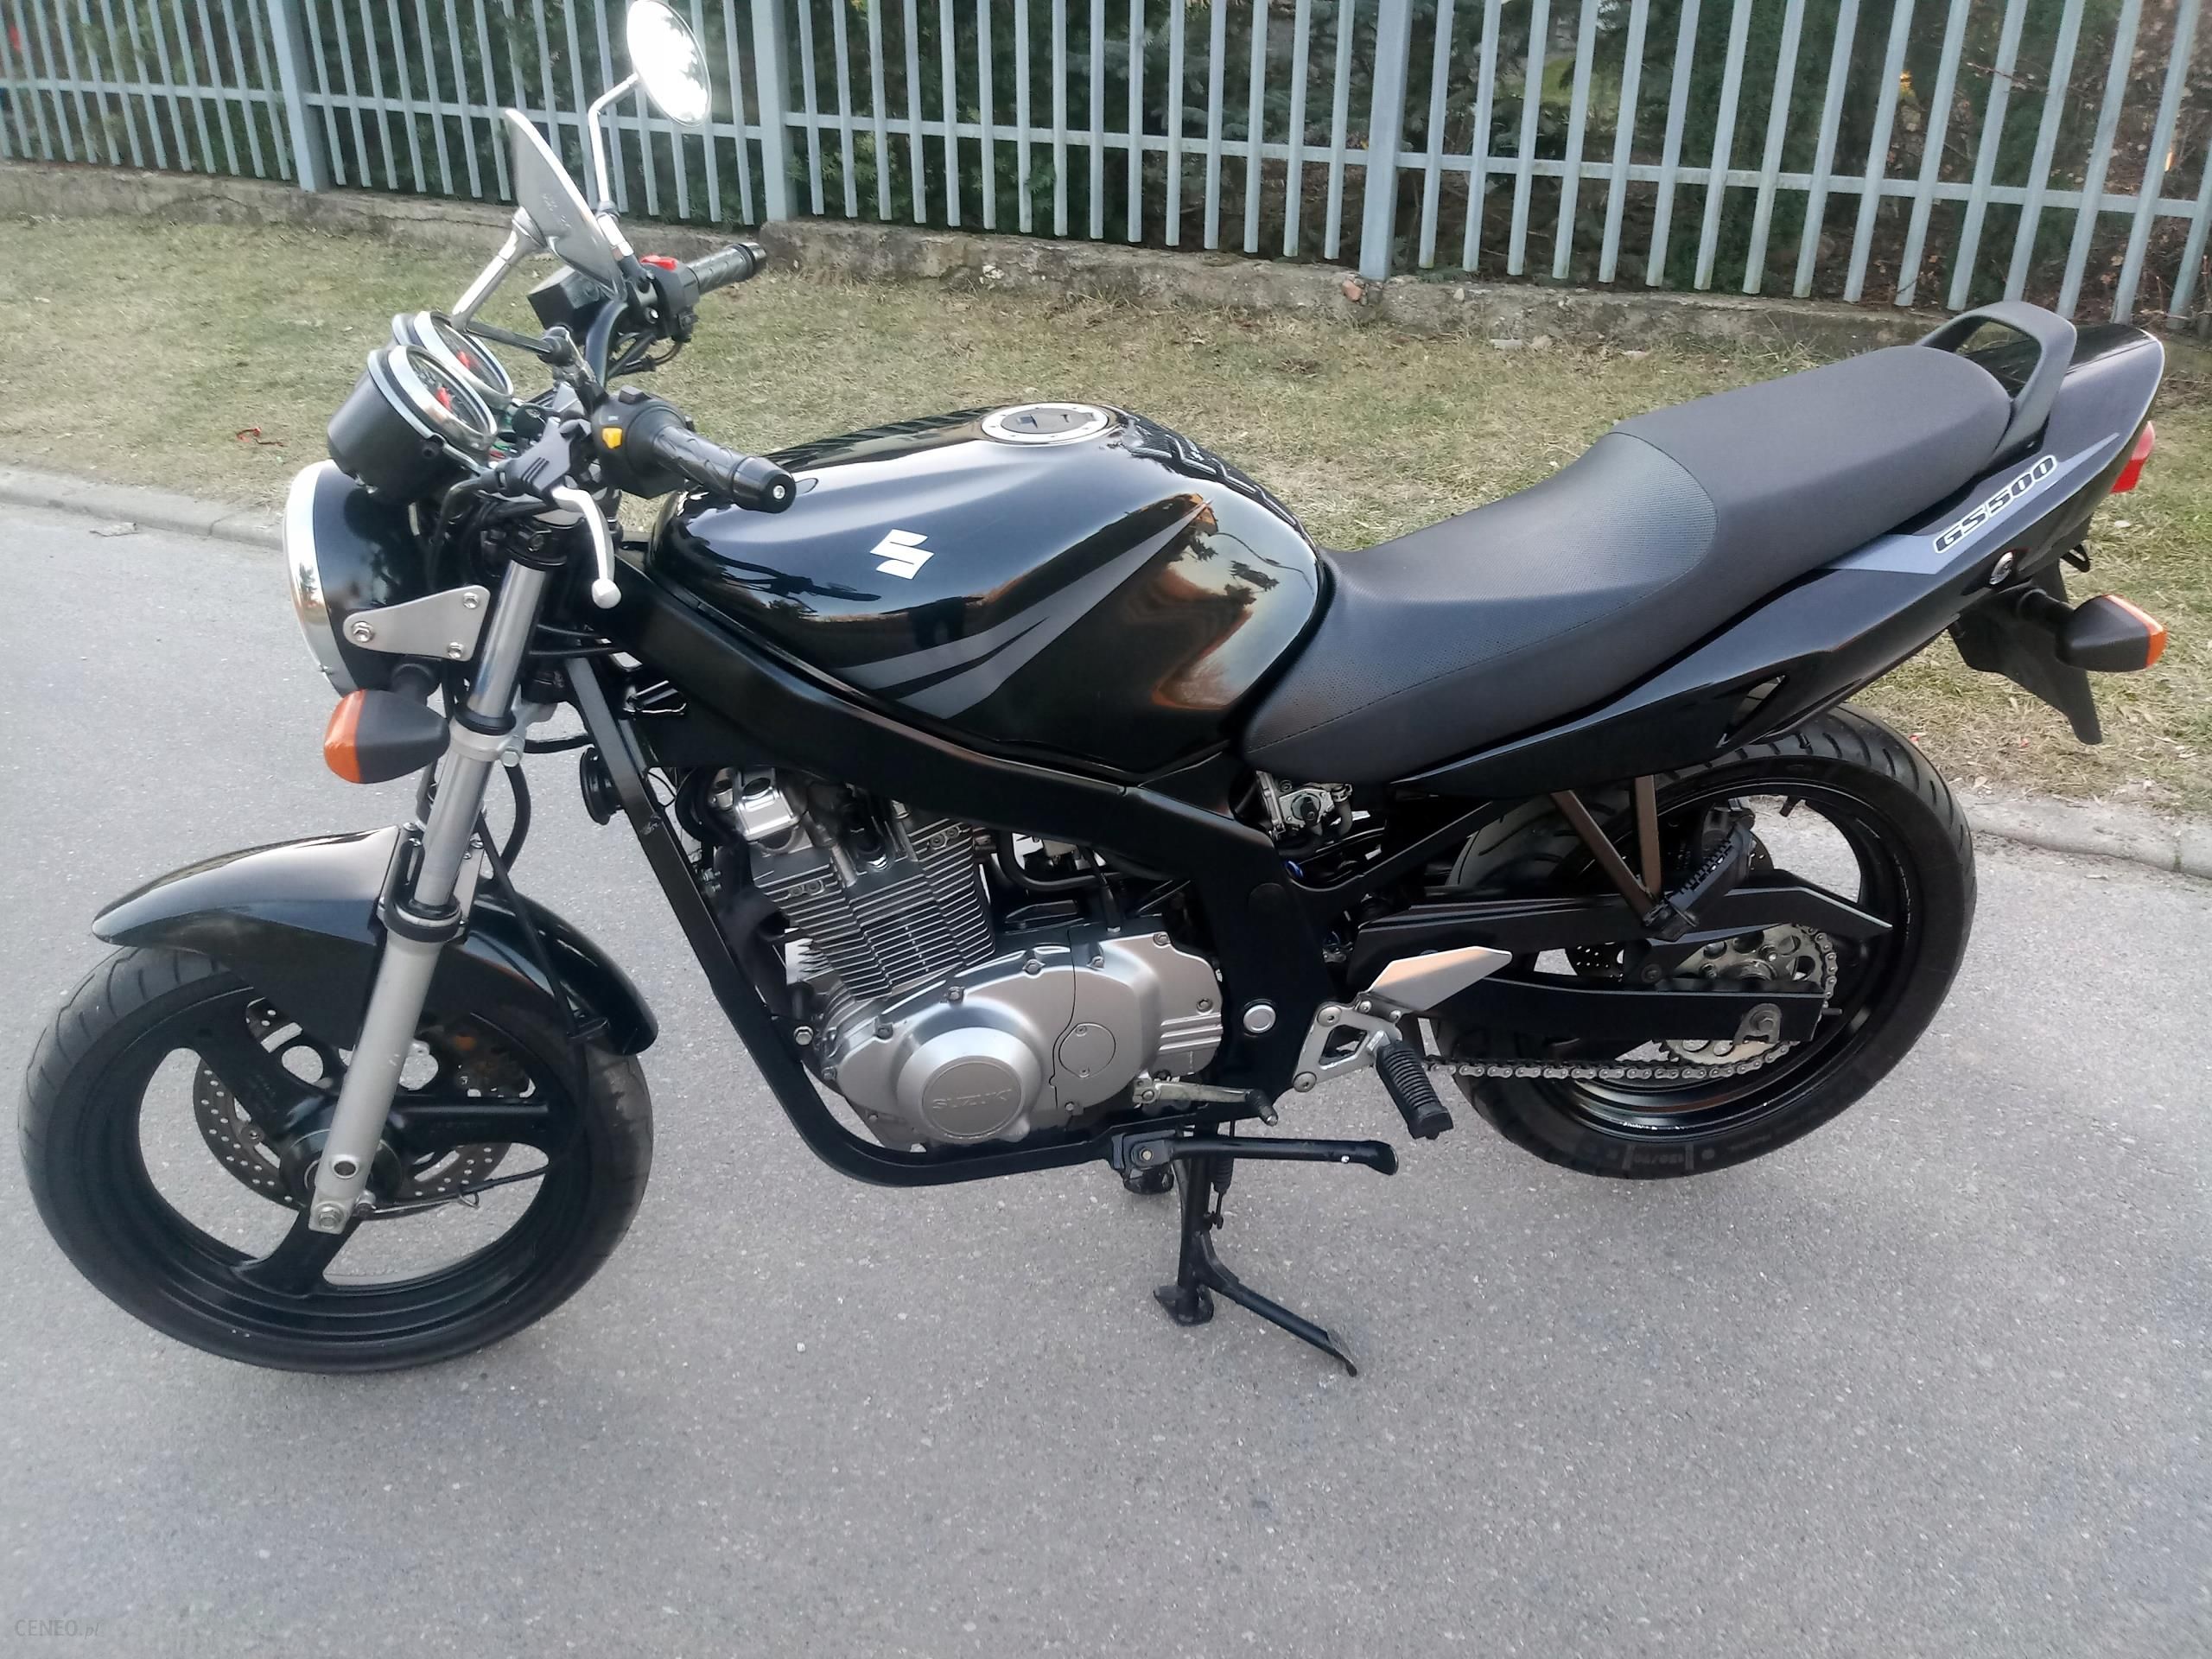 Suzuki Gs 500E, A2, 25 Tkm, Po Serwisie, Inne Gsy - Opinie I Ceny Na Ceneo.pl